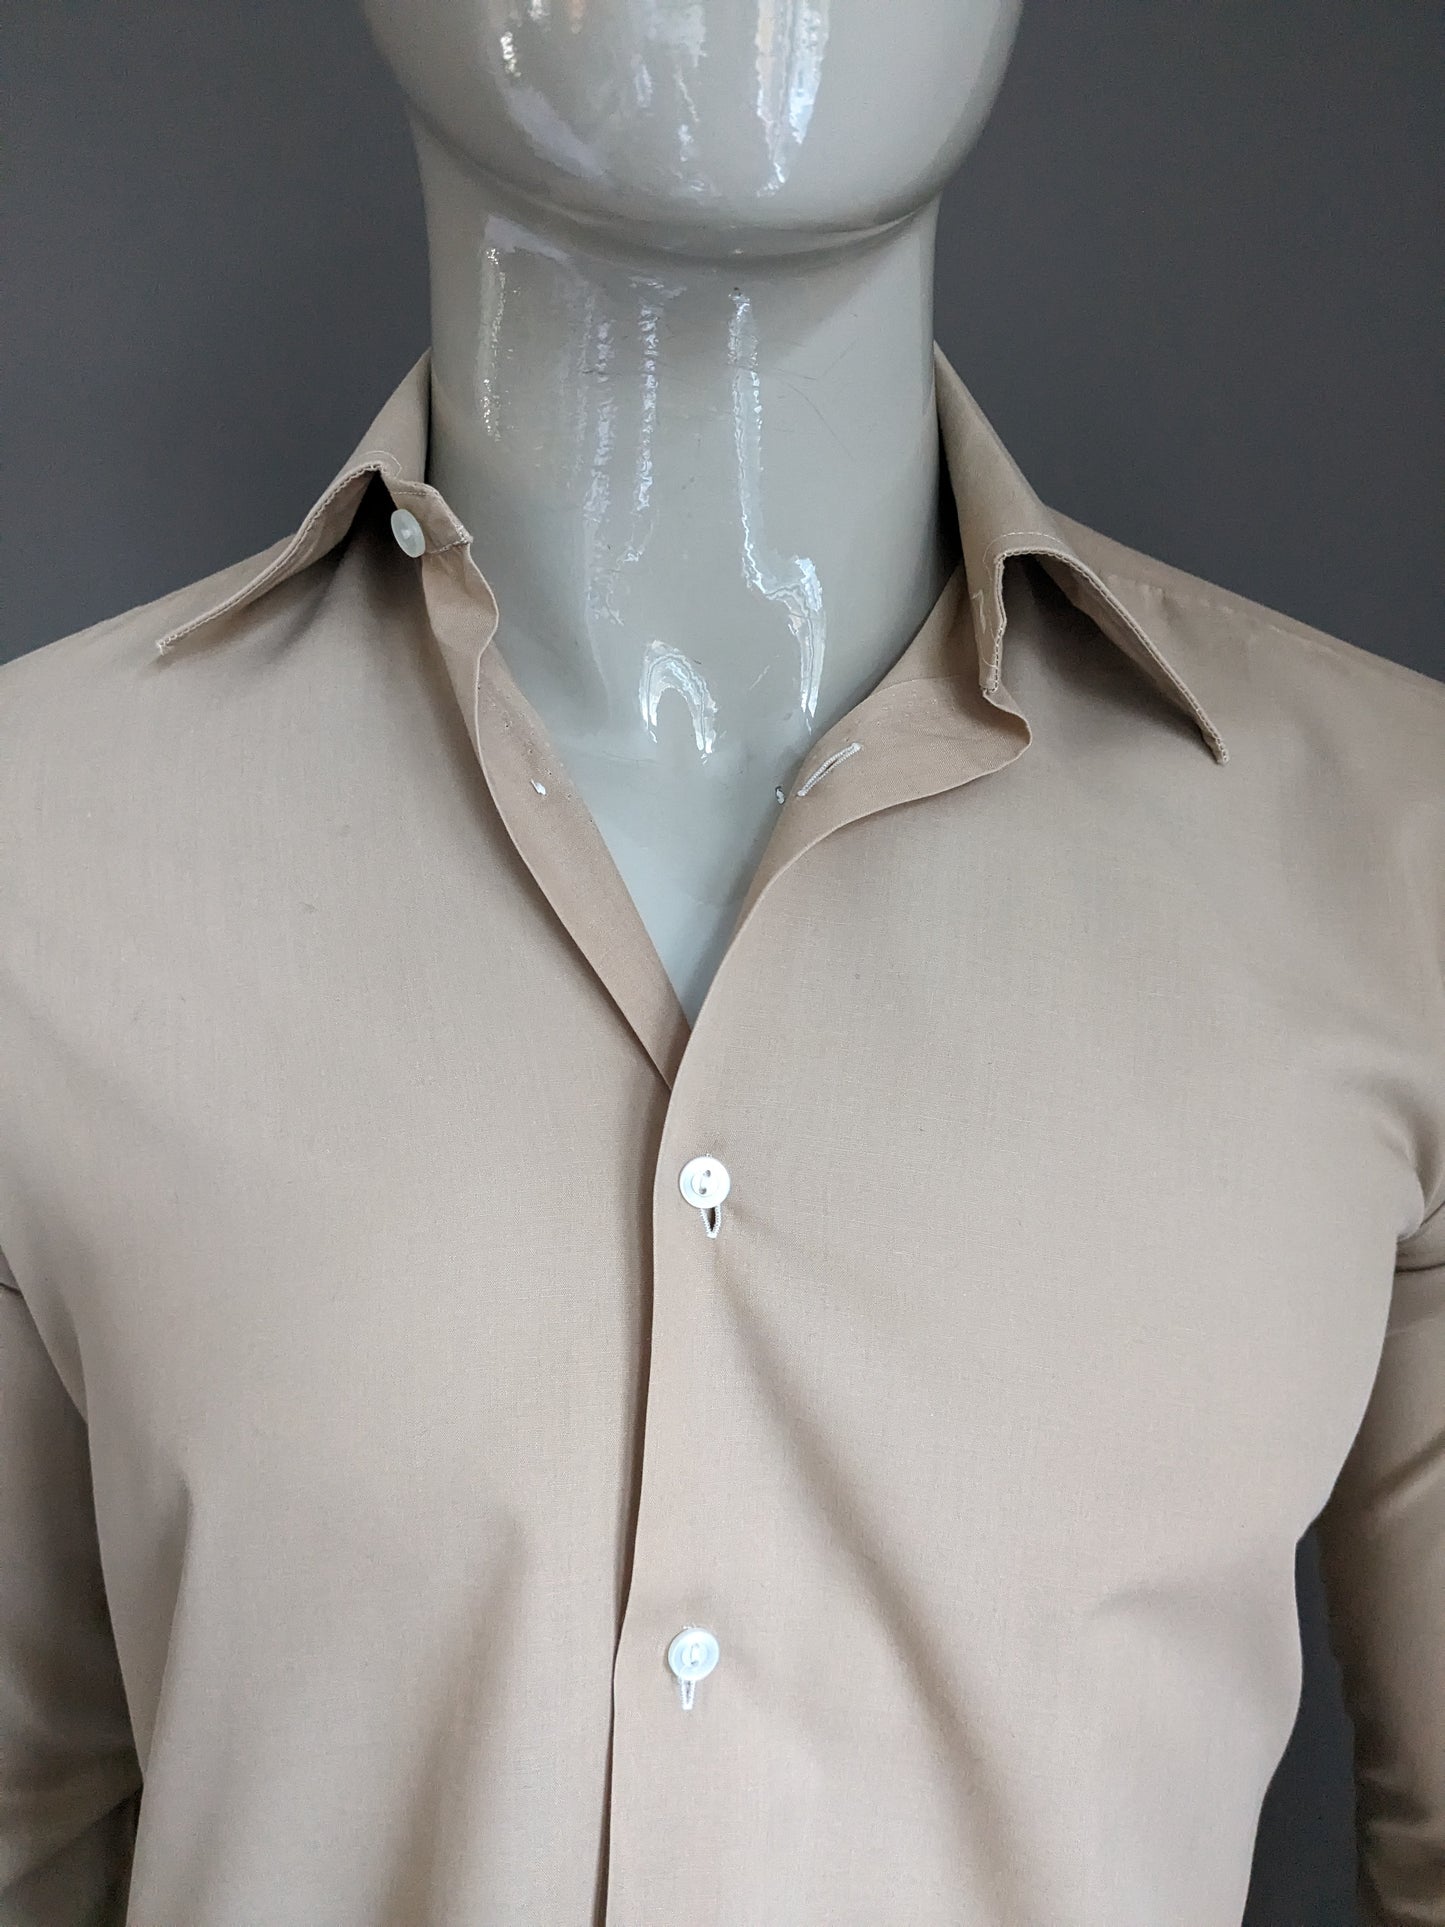 Vintage Tootal 70er Hemd mit Punktkragen. Hellbraun gefärbt. Größe M.